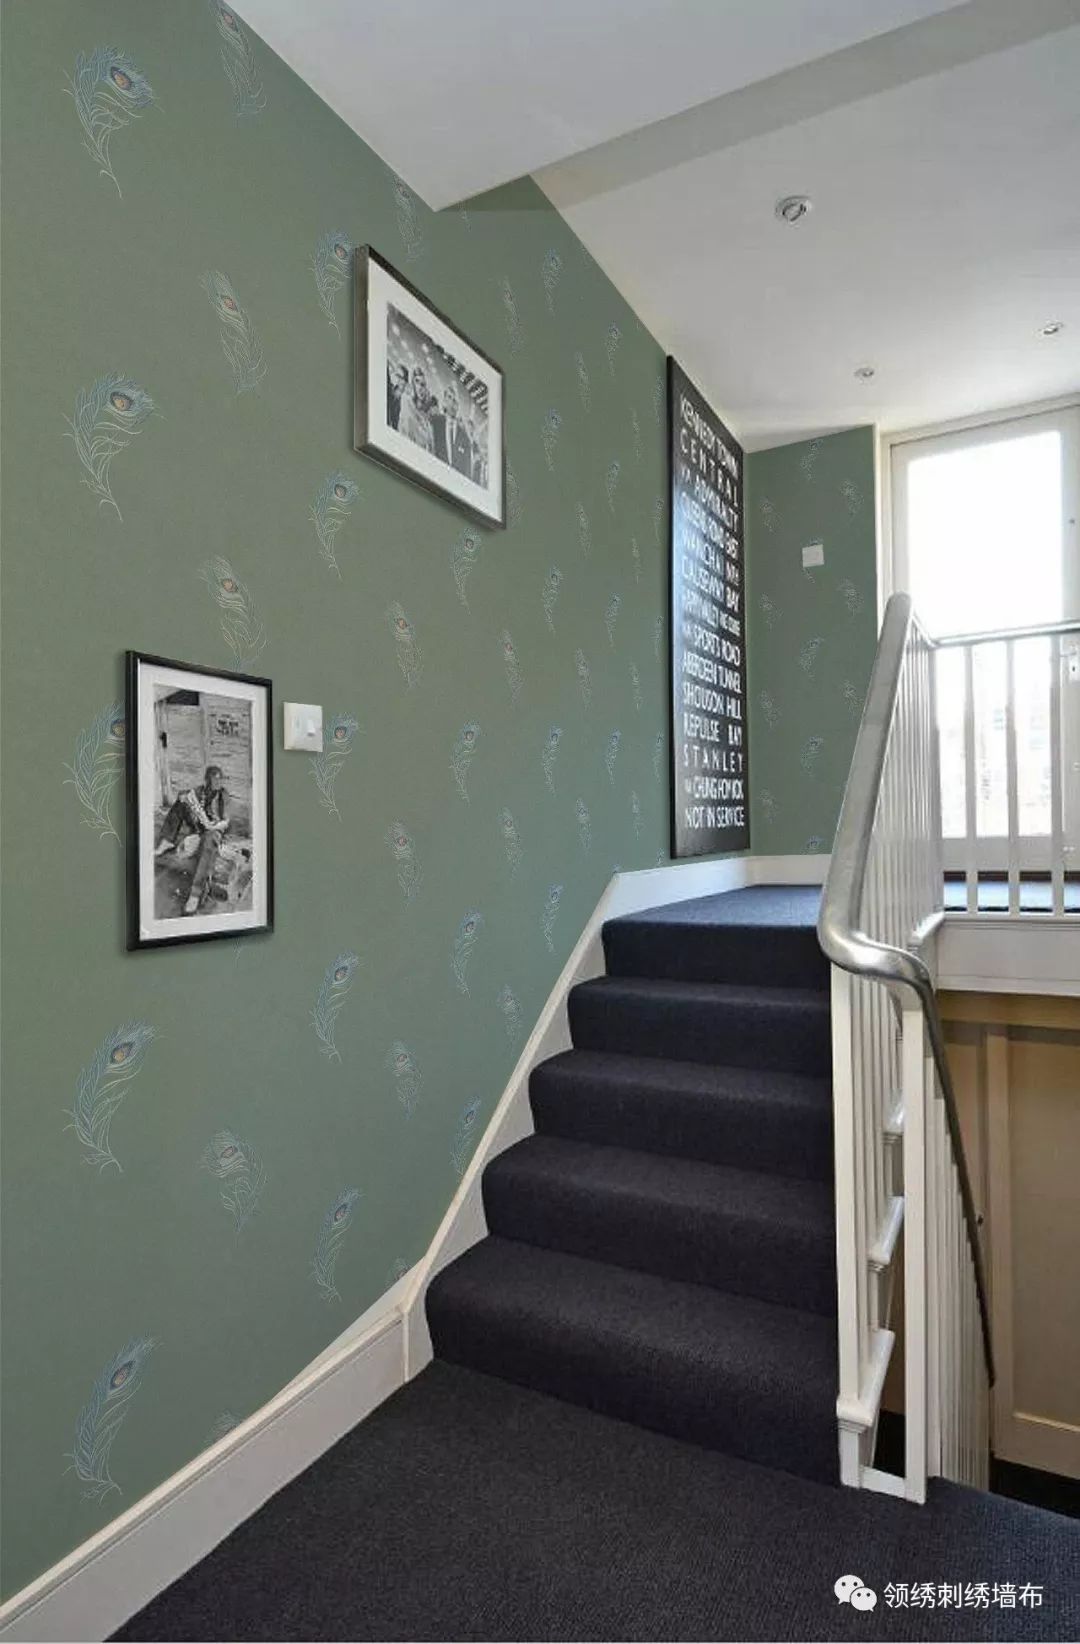 楼梯贴墙布腰线效果图图片